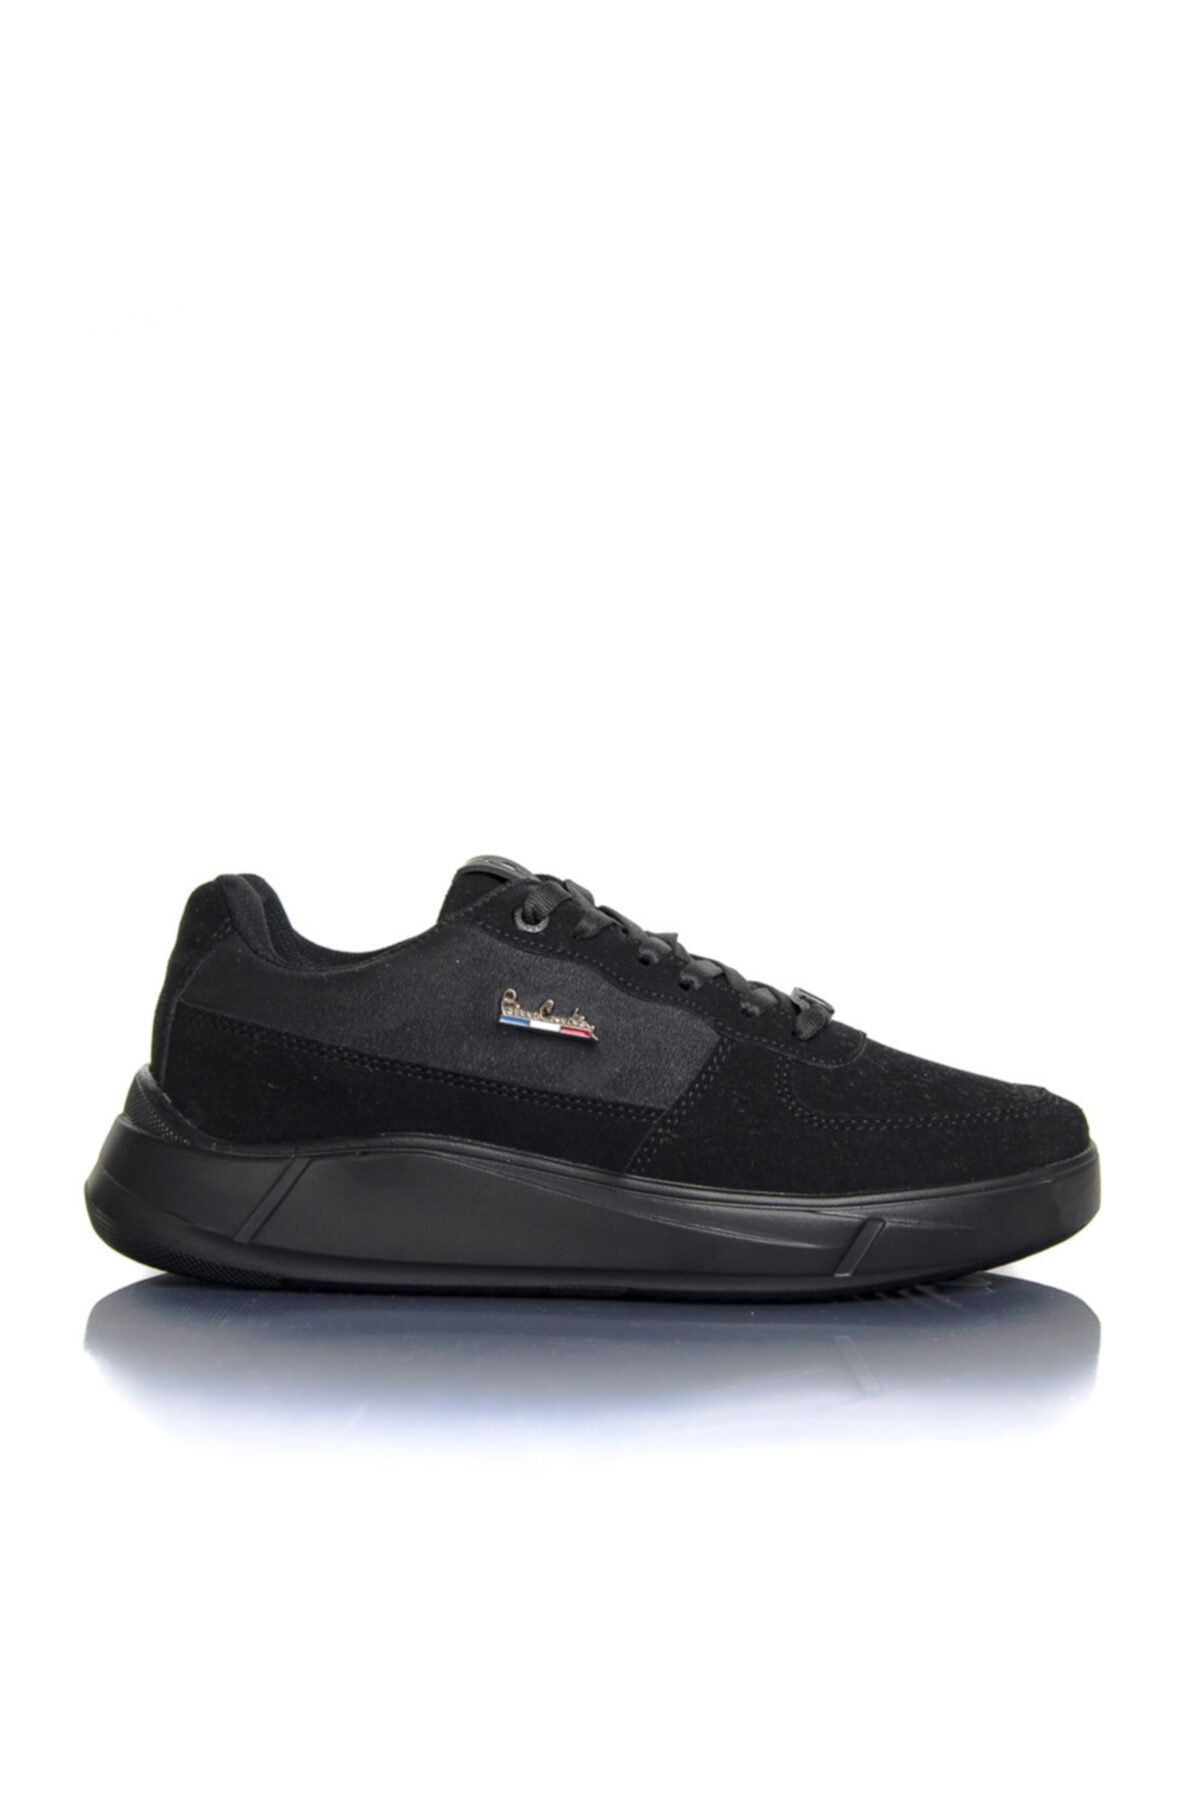 Pierre Cardin Erkek Siyah Deri Tozu Vegan Süet Bağcıklı Günlük Klasik Spor Ayakkabı -pce3002